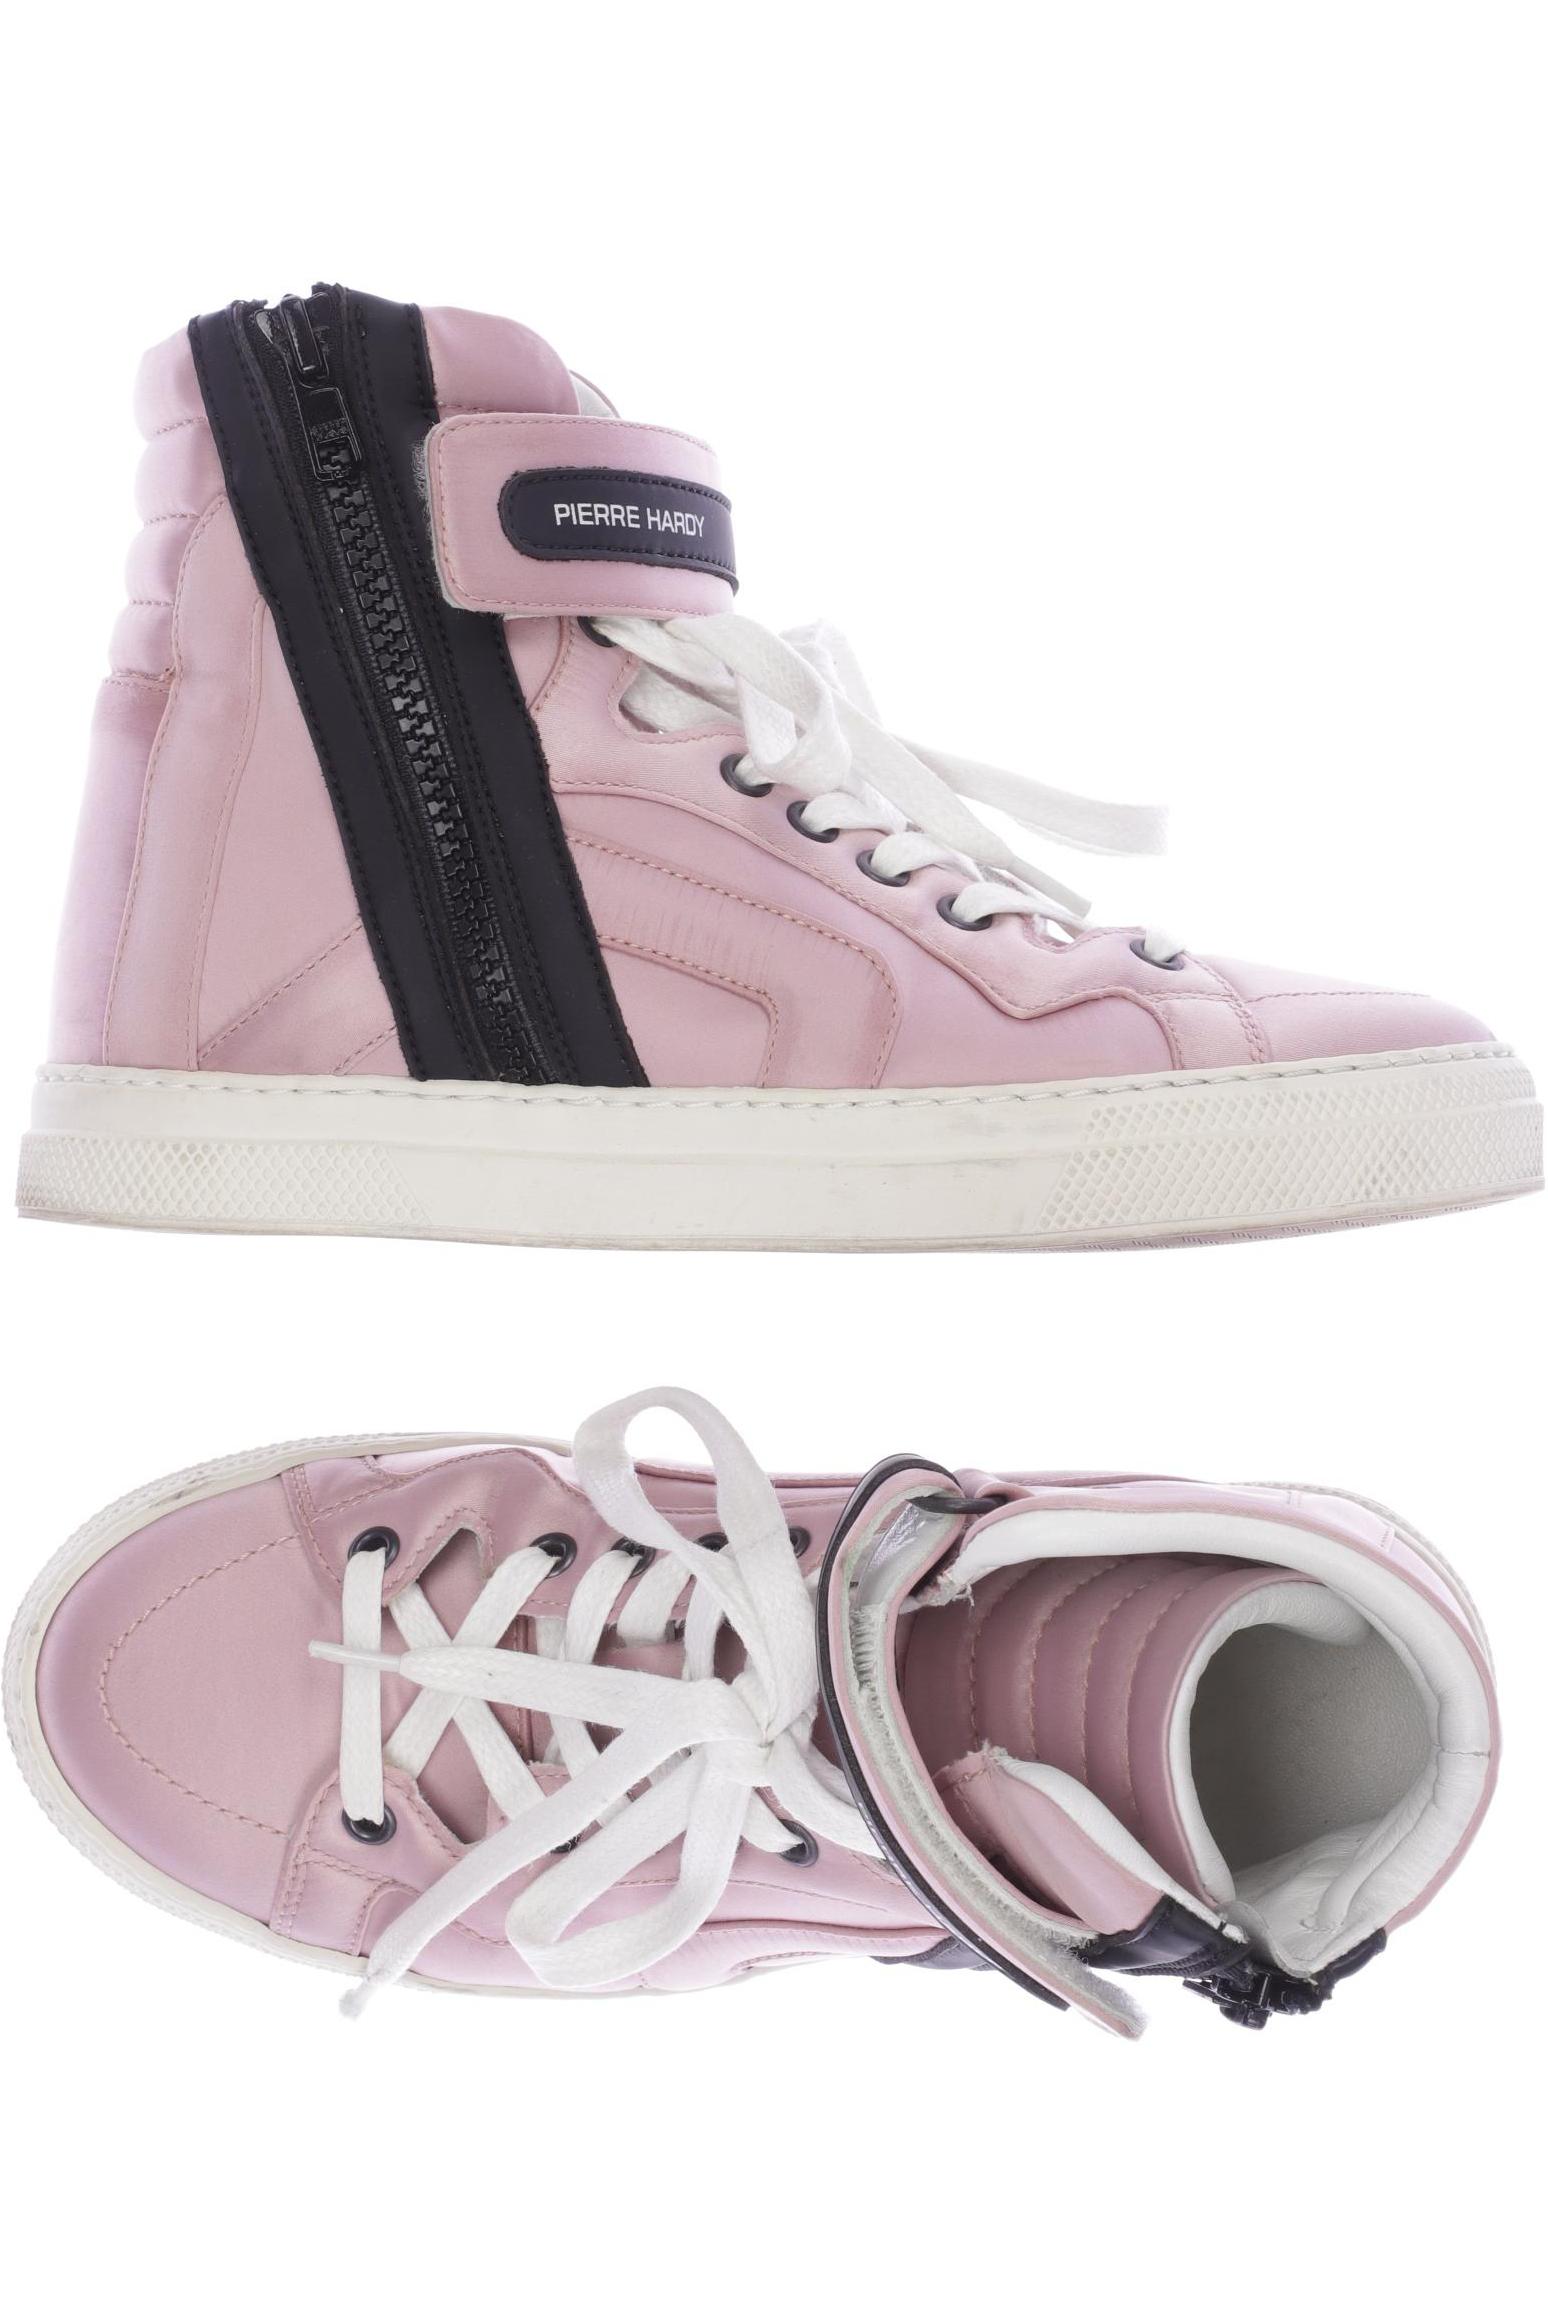 Pierre Hardy Damen Sneakers, pink, Gr. 36 von Pierre Hardy